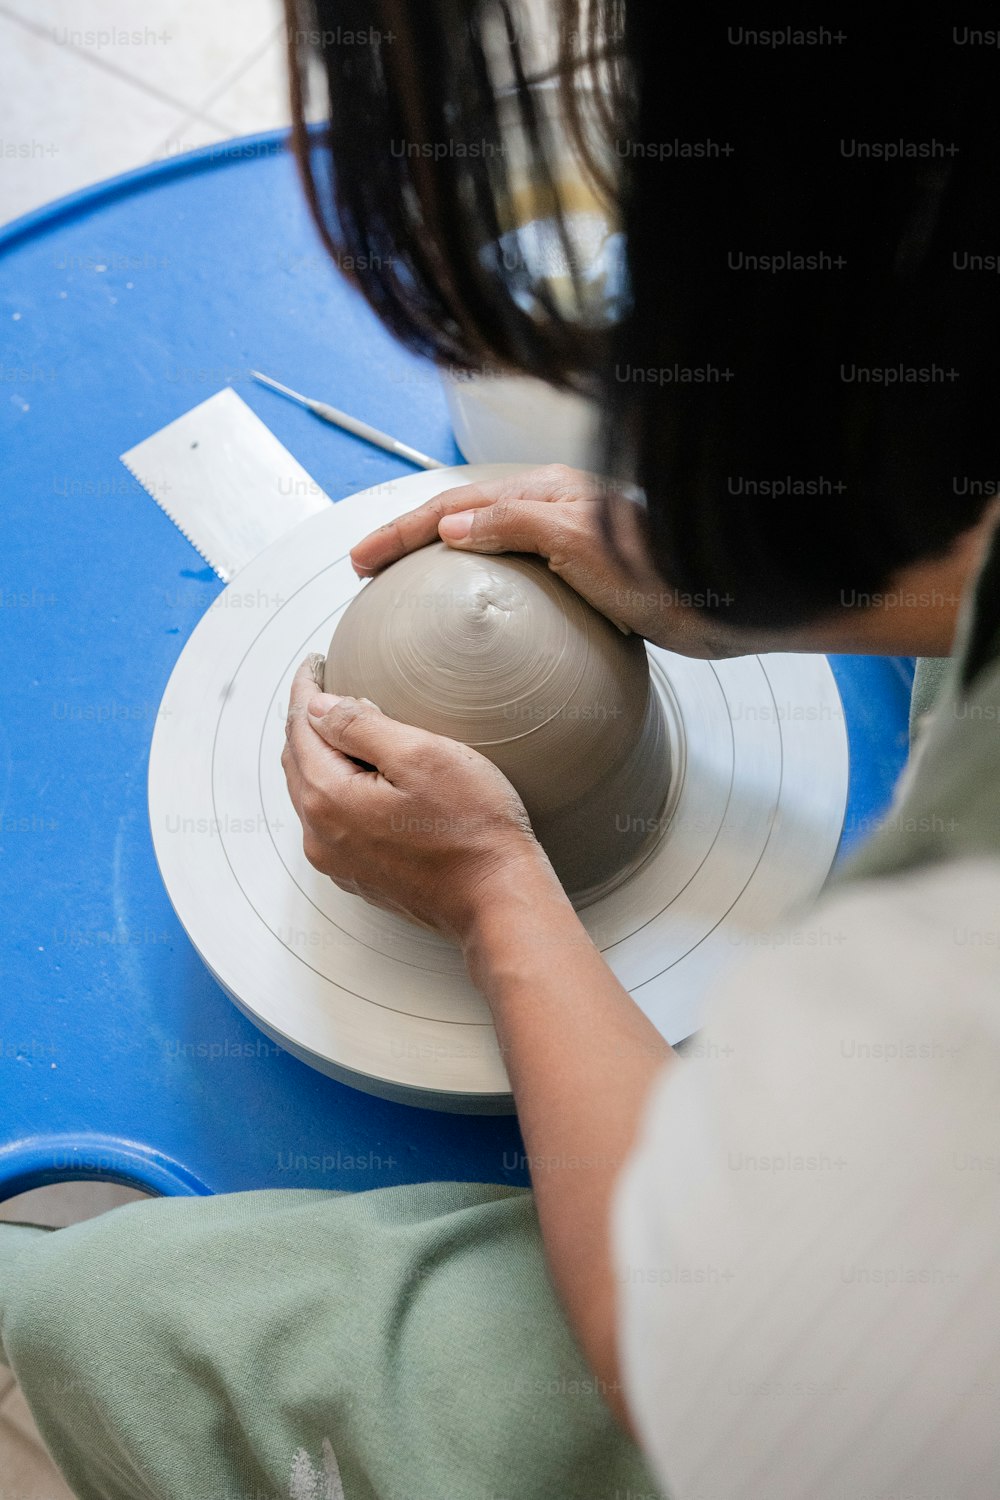 Une femme fabrique un vase en argile